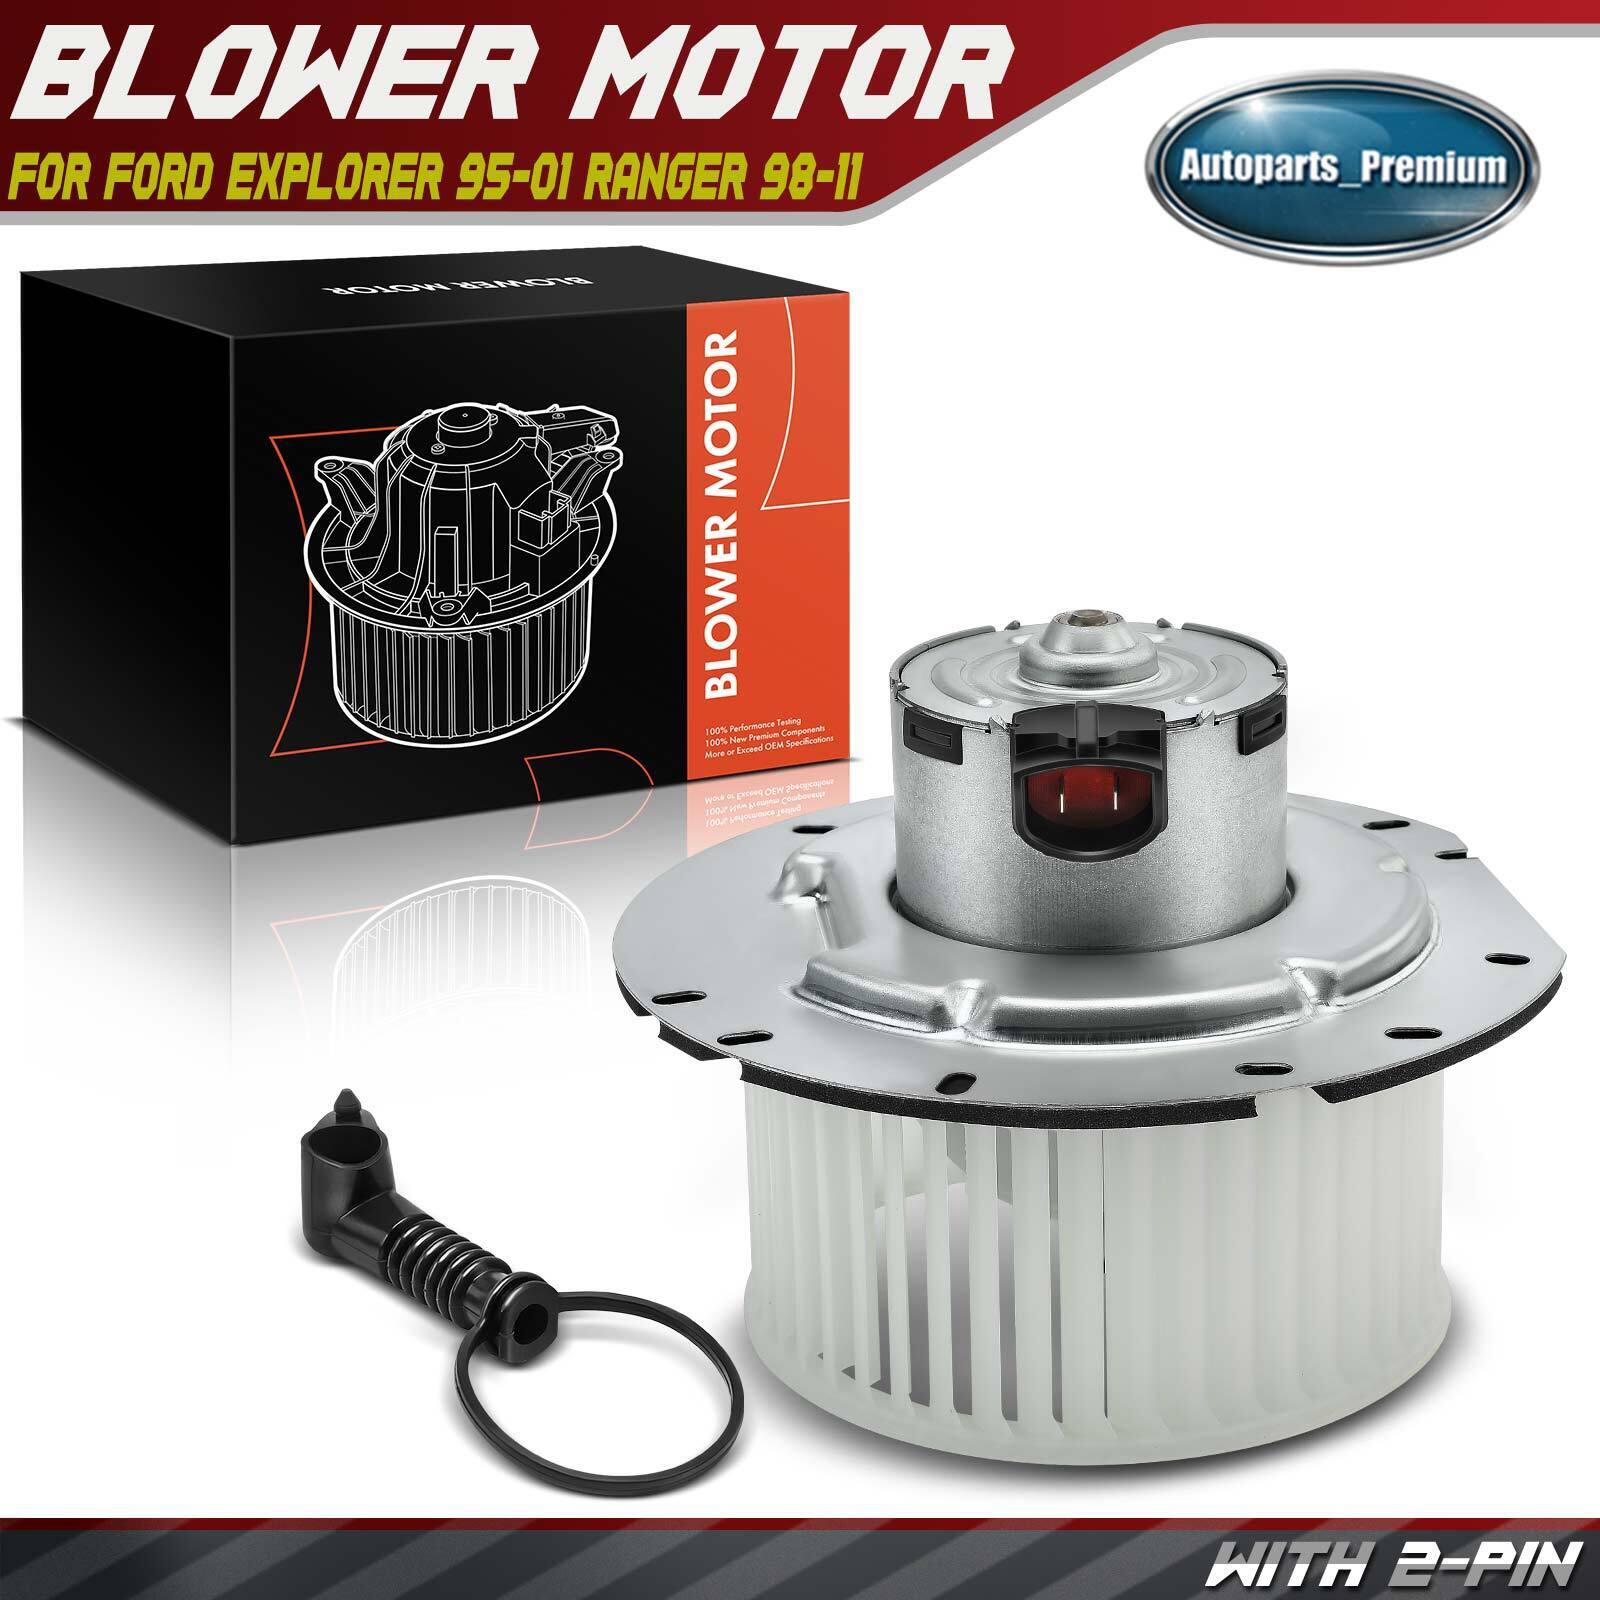 HVAC Blower Heater Motor for Ford Explorer Ranger Mercury w/ Fan Cage 700019